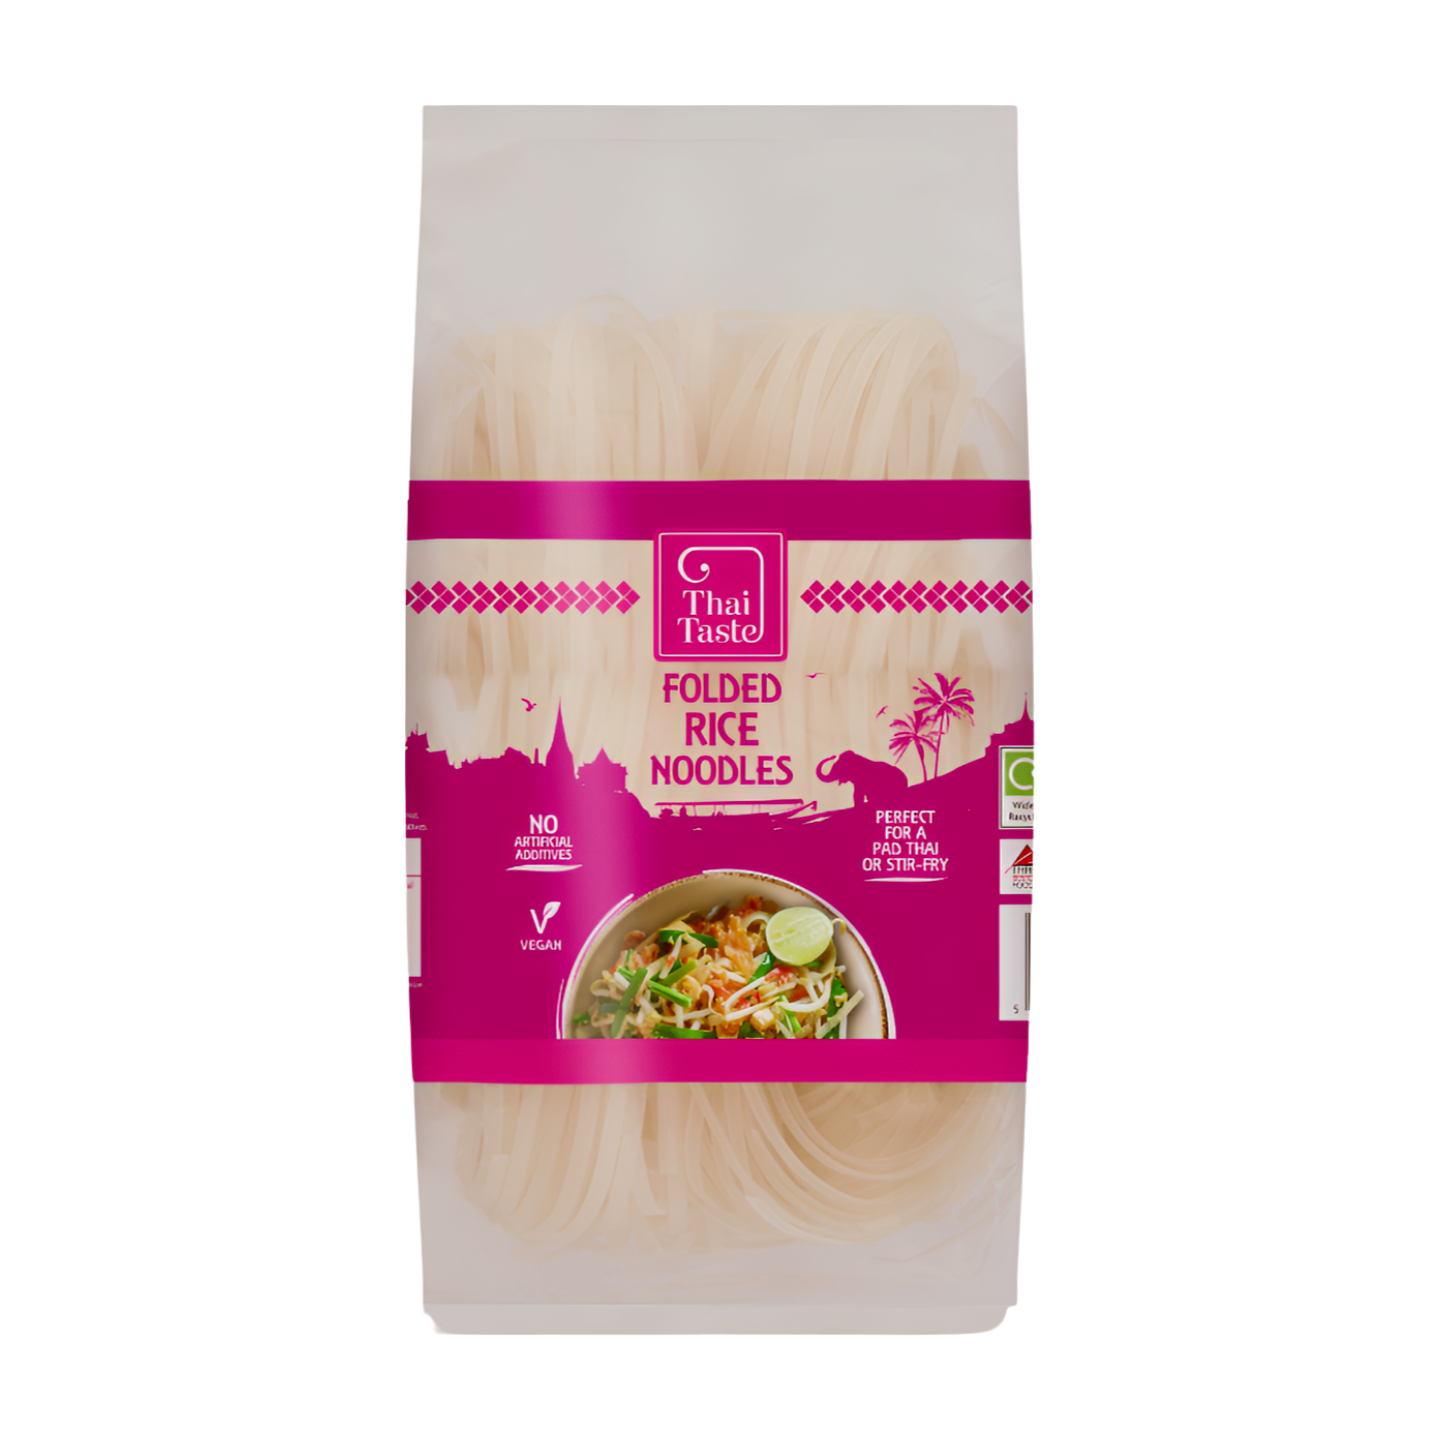 Thai Taste Folded Rice Noodles (6x200g)